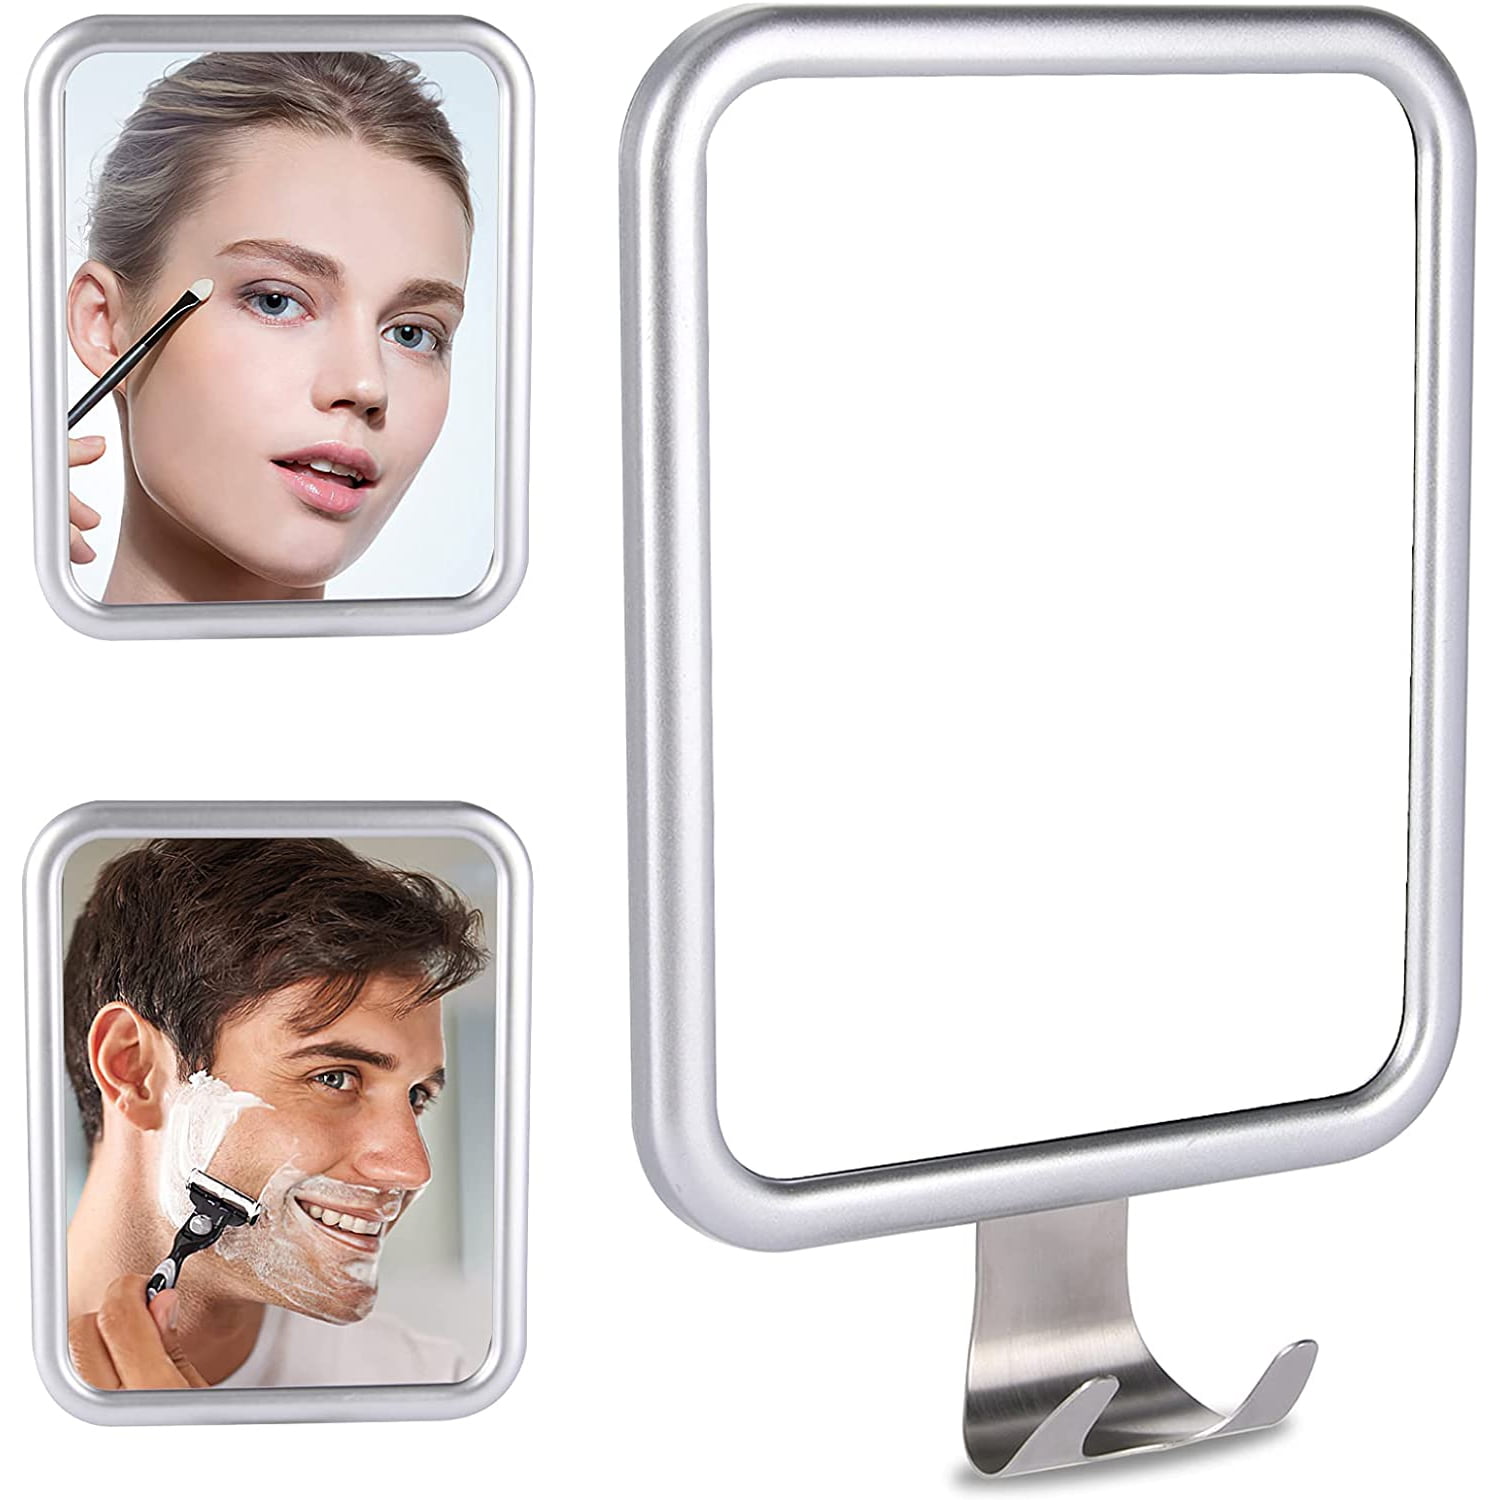 Softfree Fogless Shower Mirror for Shaving with Razor Holder 6